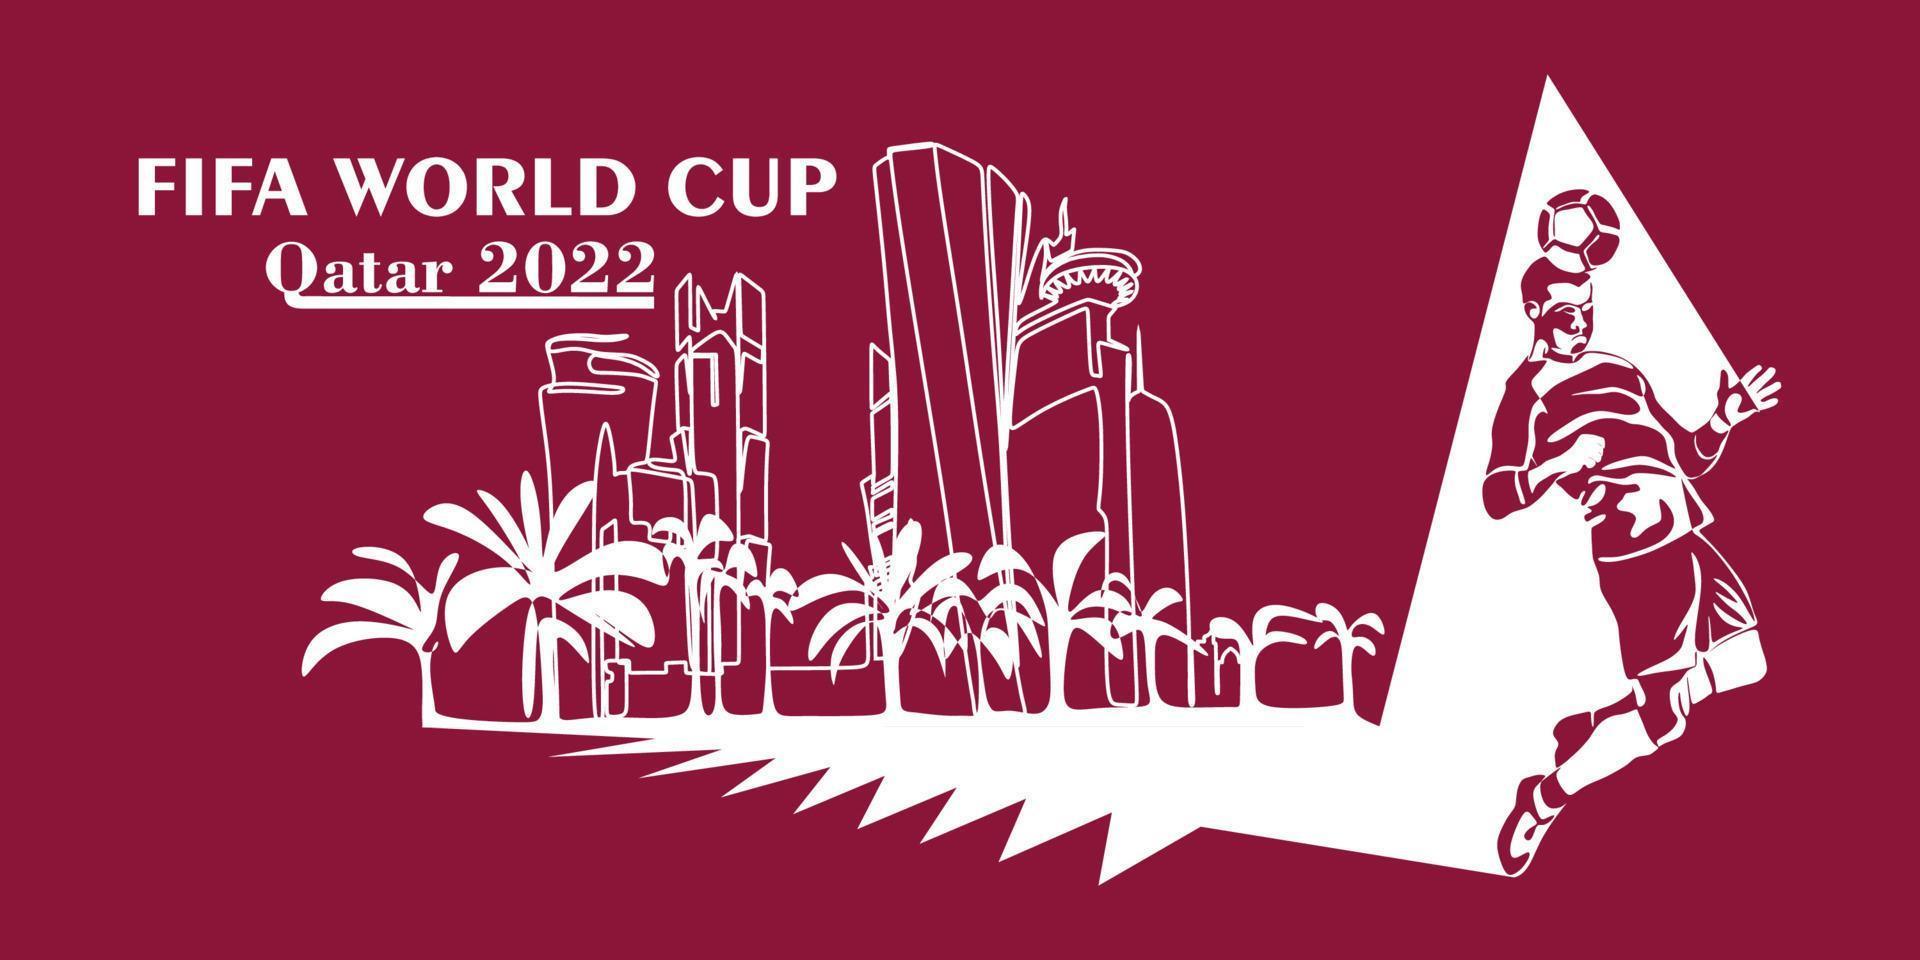 wereld kop in qatar in 2022 spandoek. gestileerde vector geïsoleerd modern illustratie van de hoofdstad doha stad met symbool, kleuren en vlag